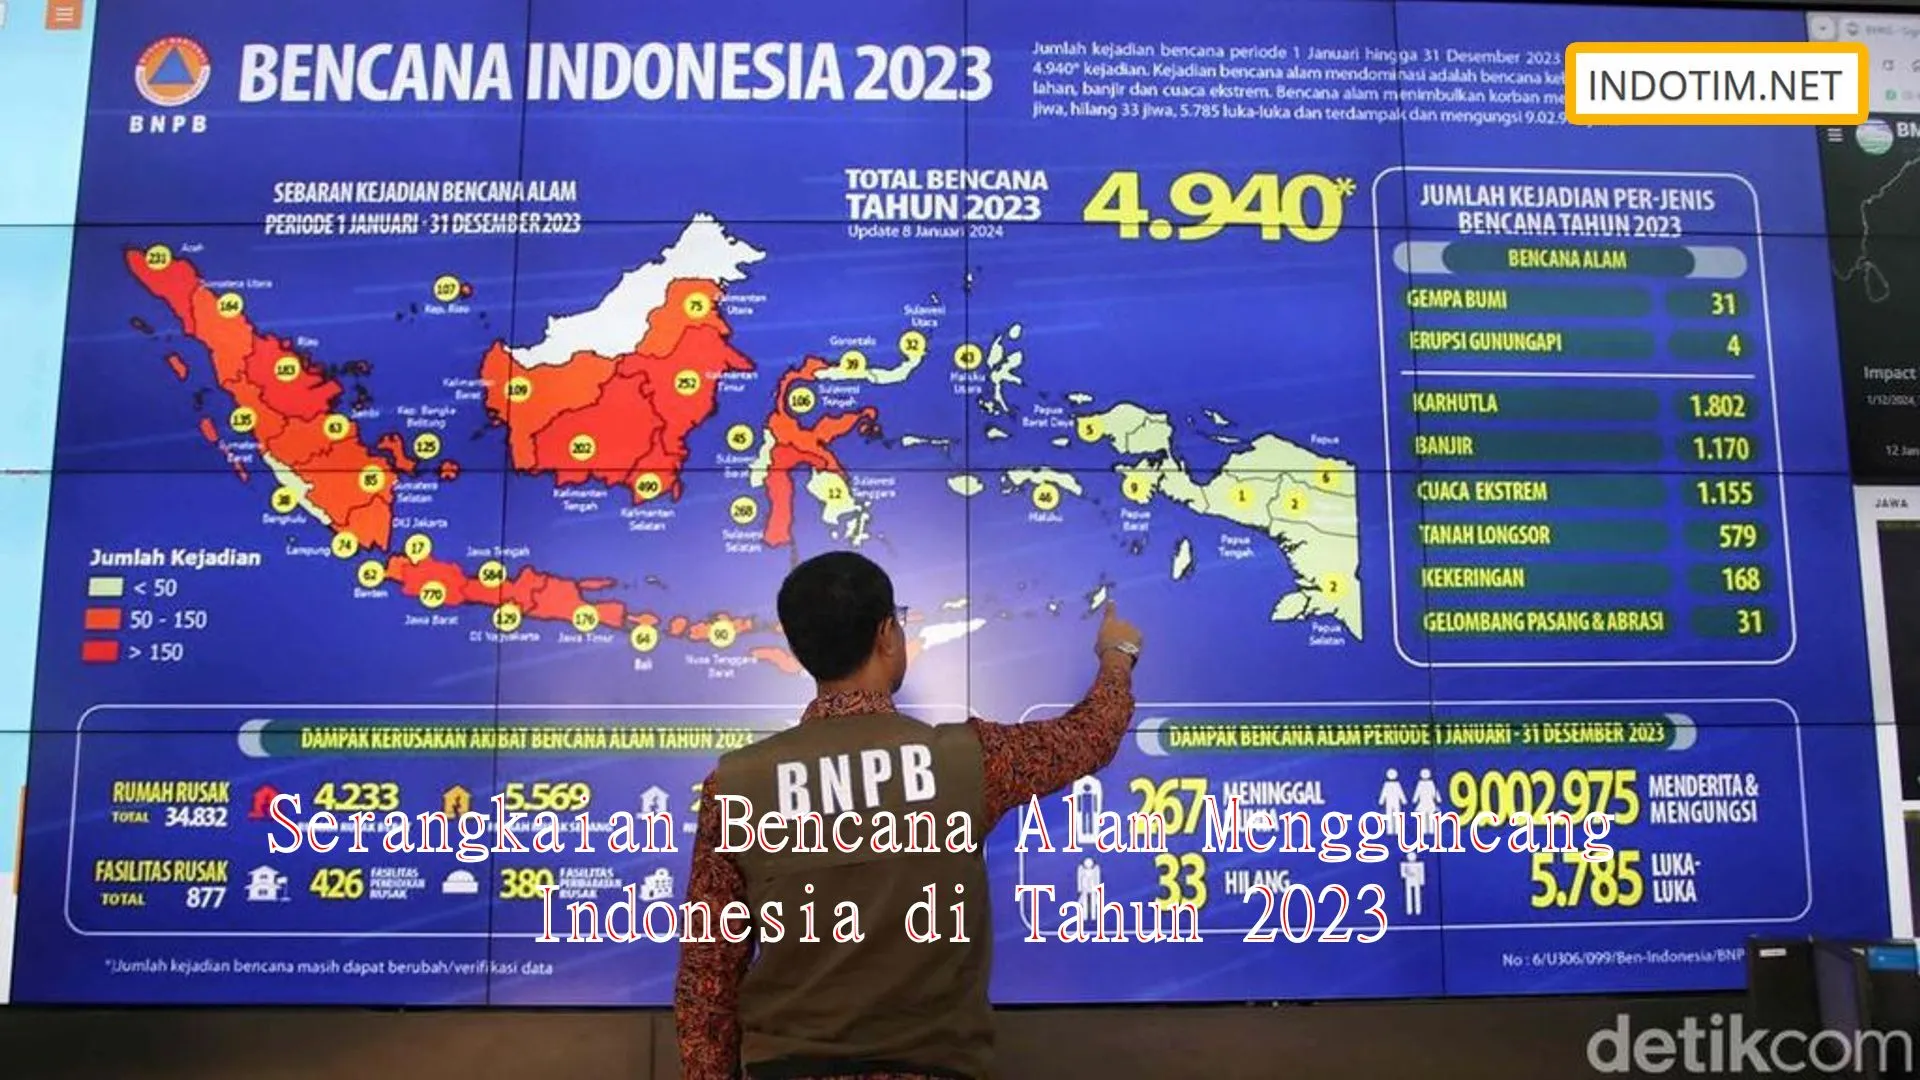 Serangkaian Bencana Alam Mengguncang Indonesia di Tahun 2023